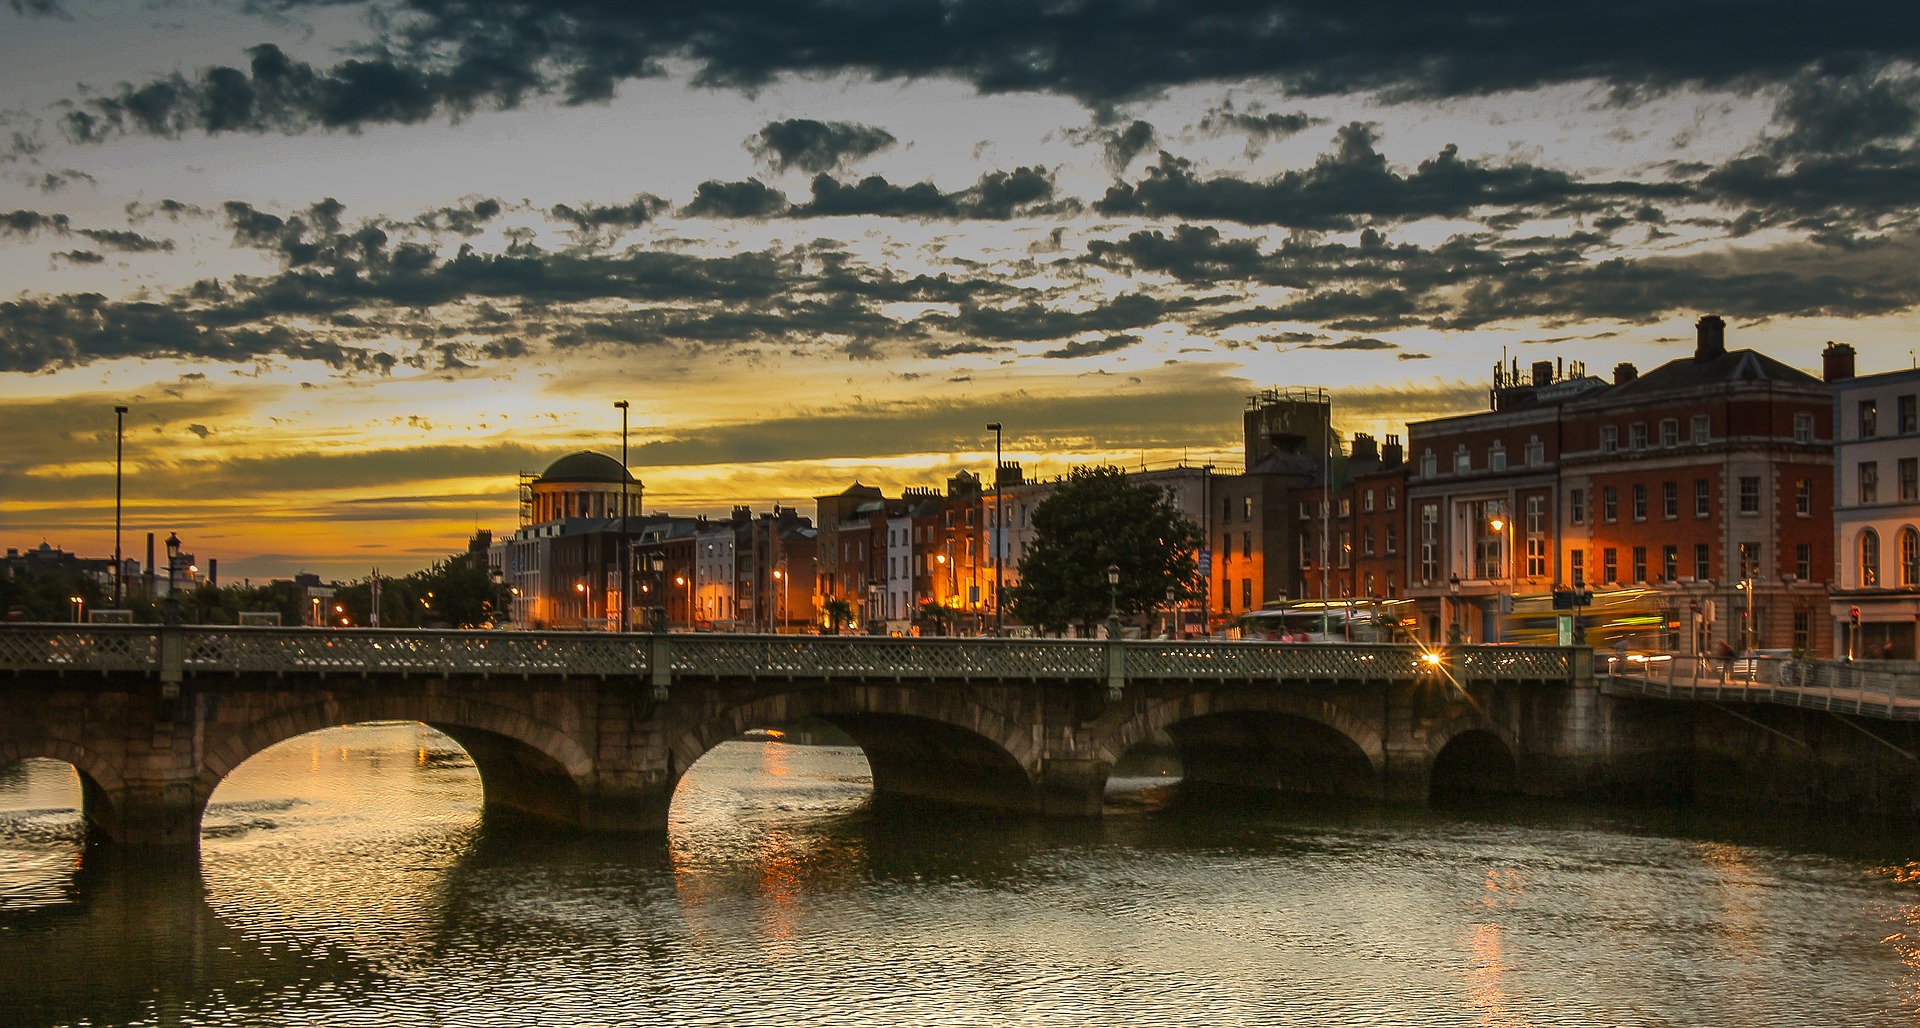 Dublino, a spasso nella tradizione